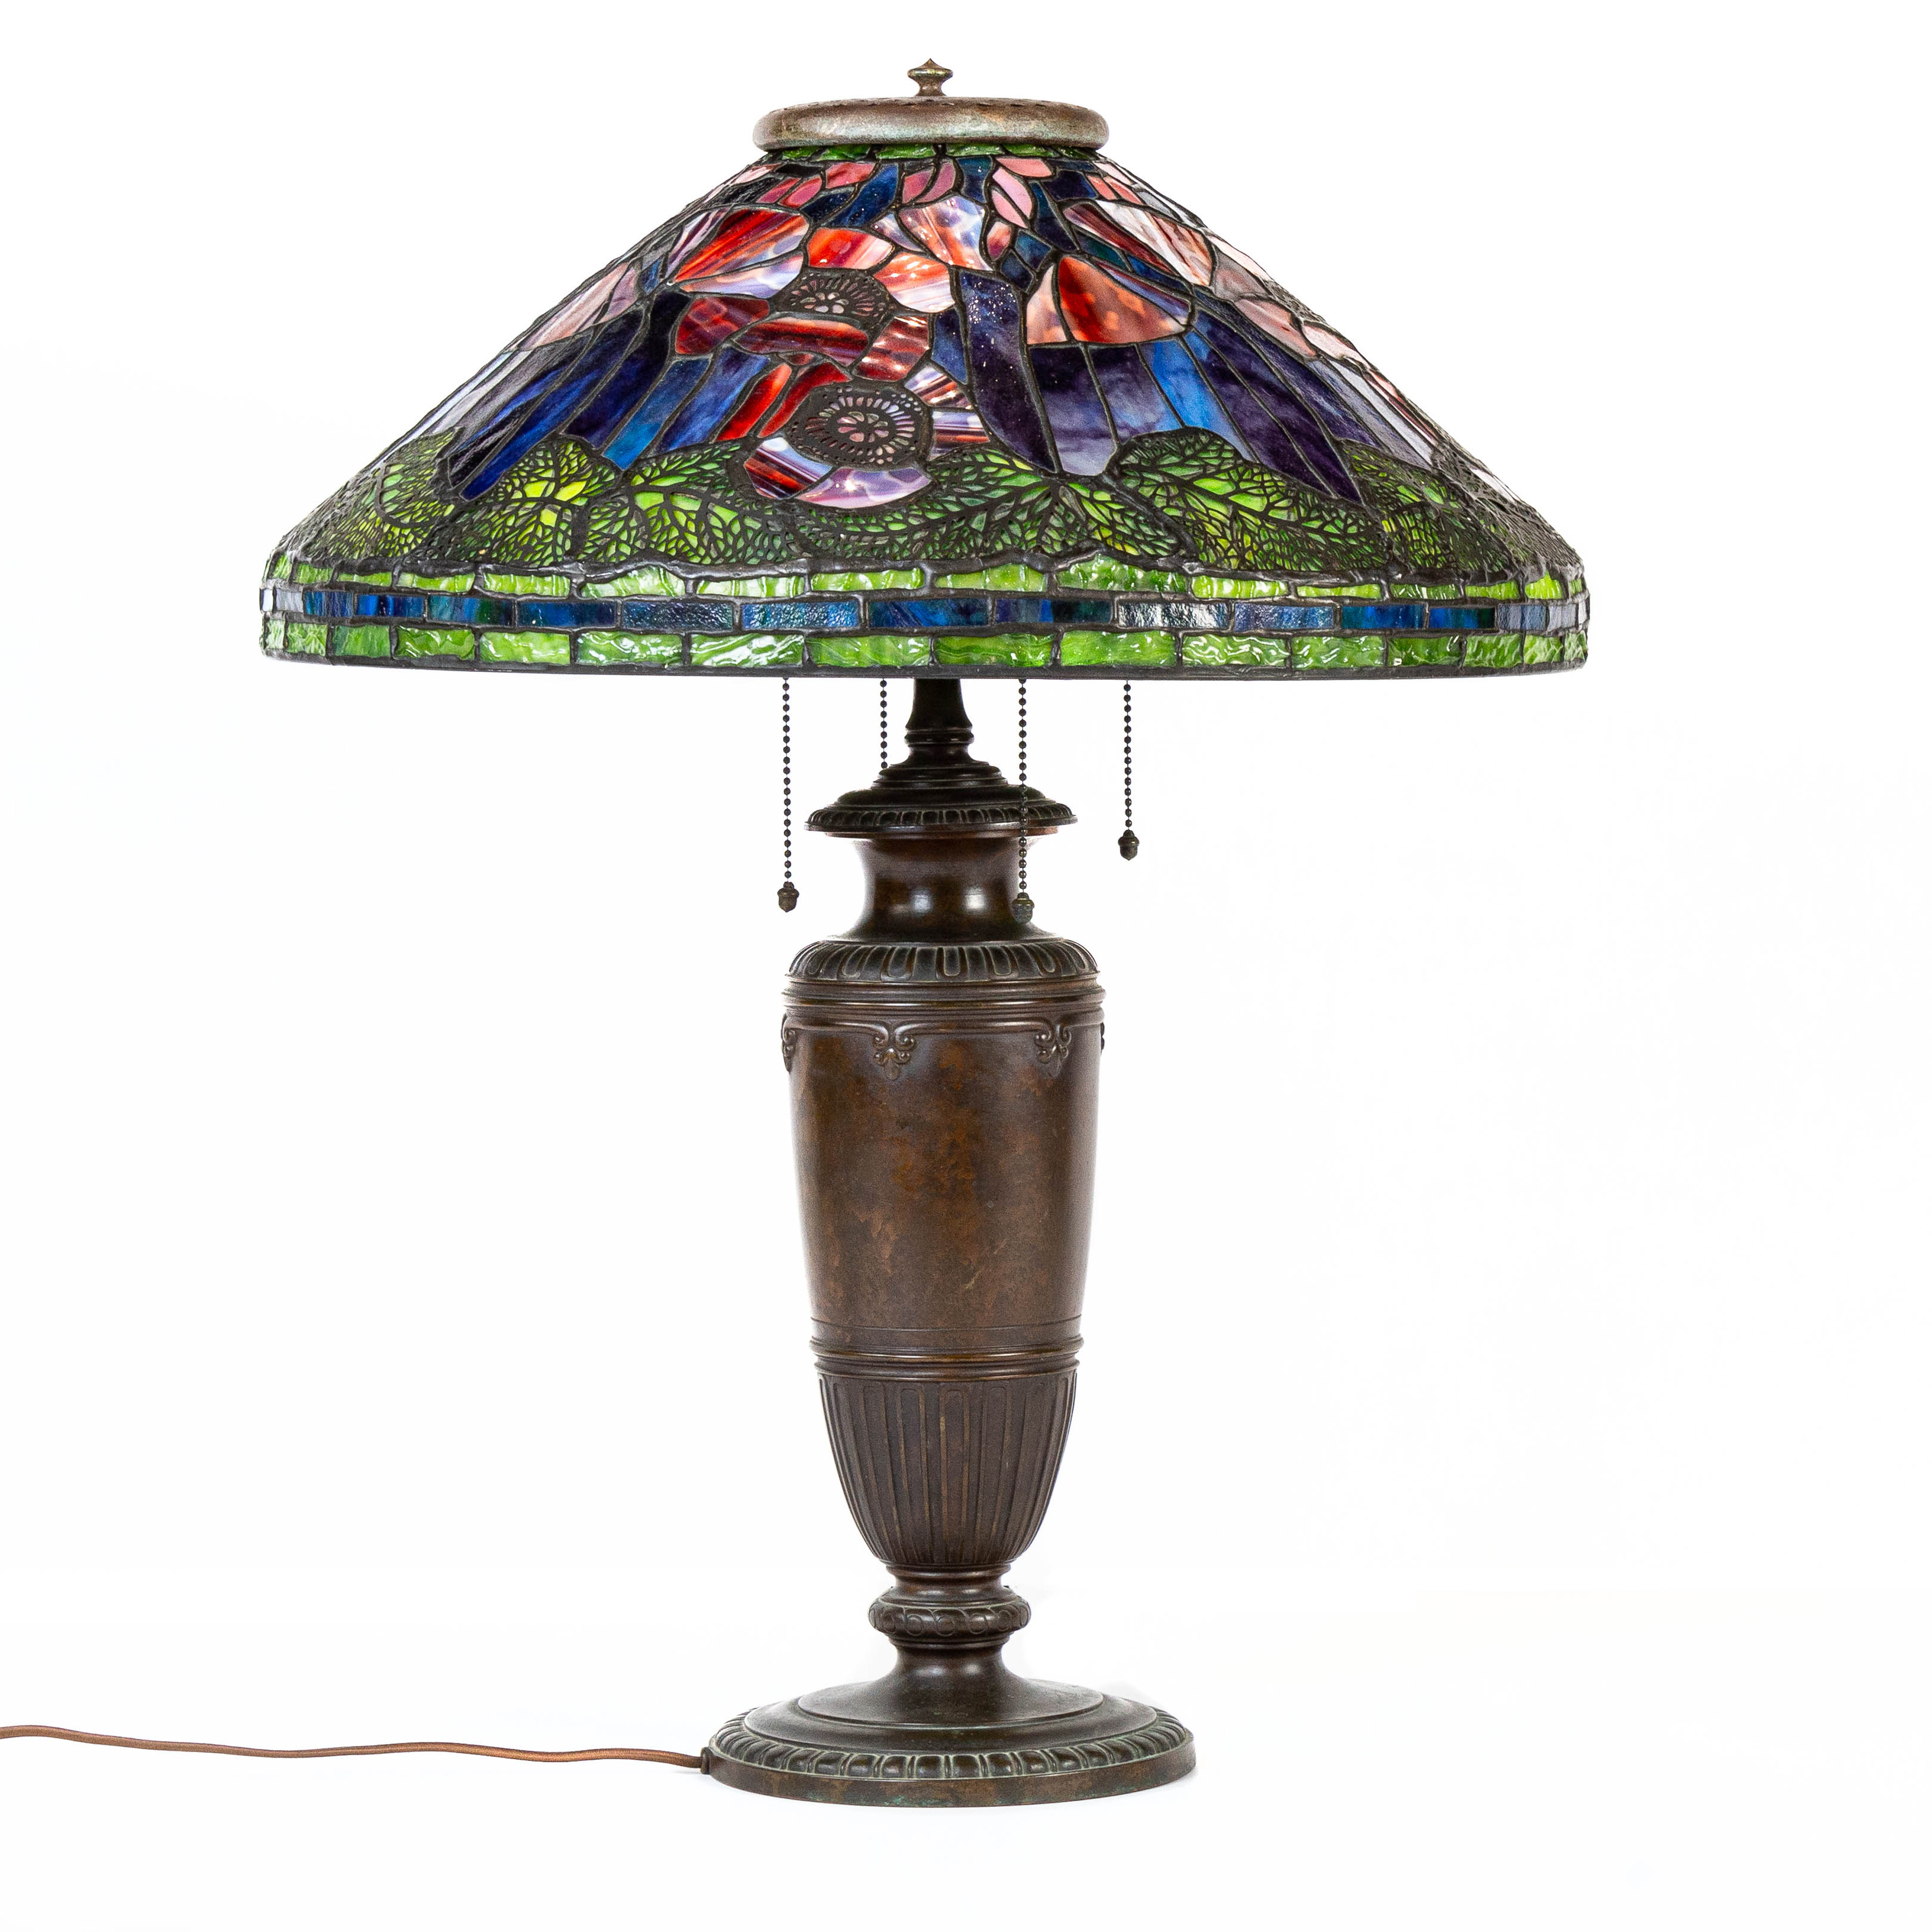 TIFFANY STYLE LEADED GLASS LAMP Tiffany